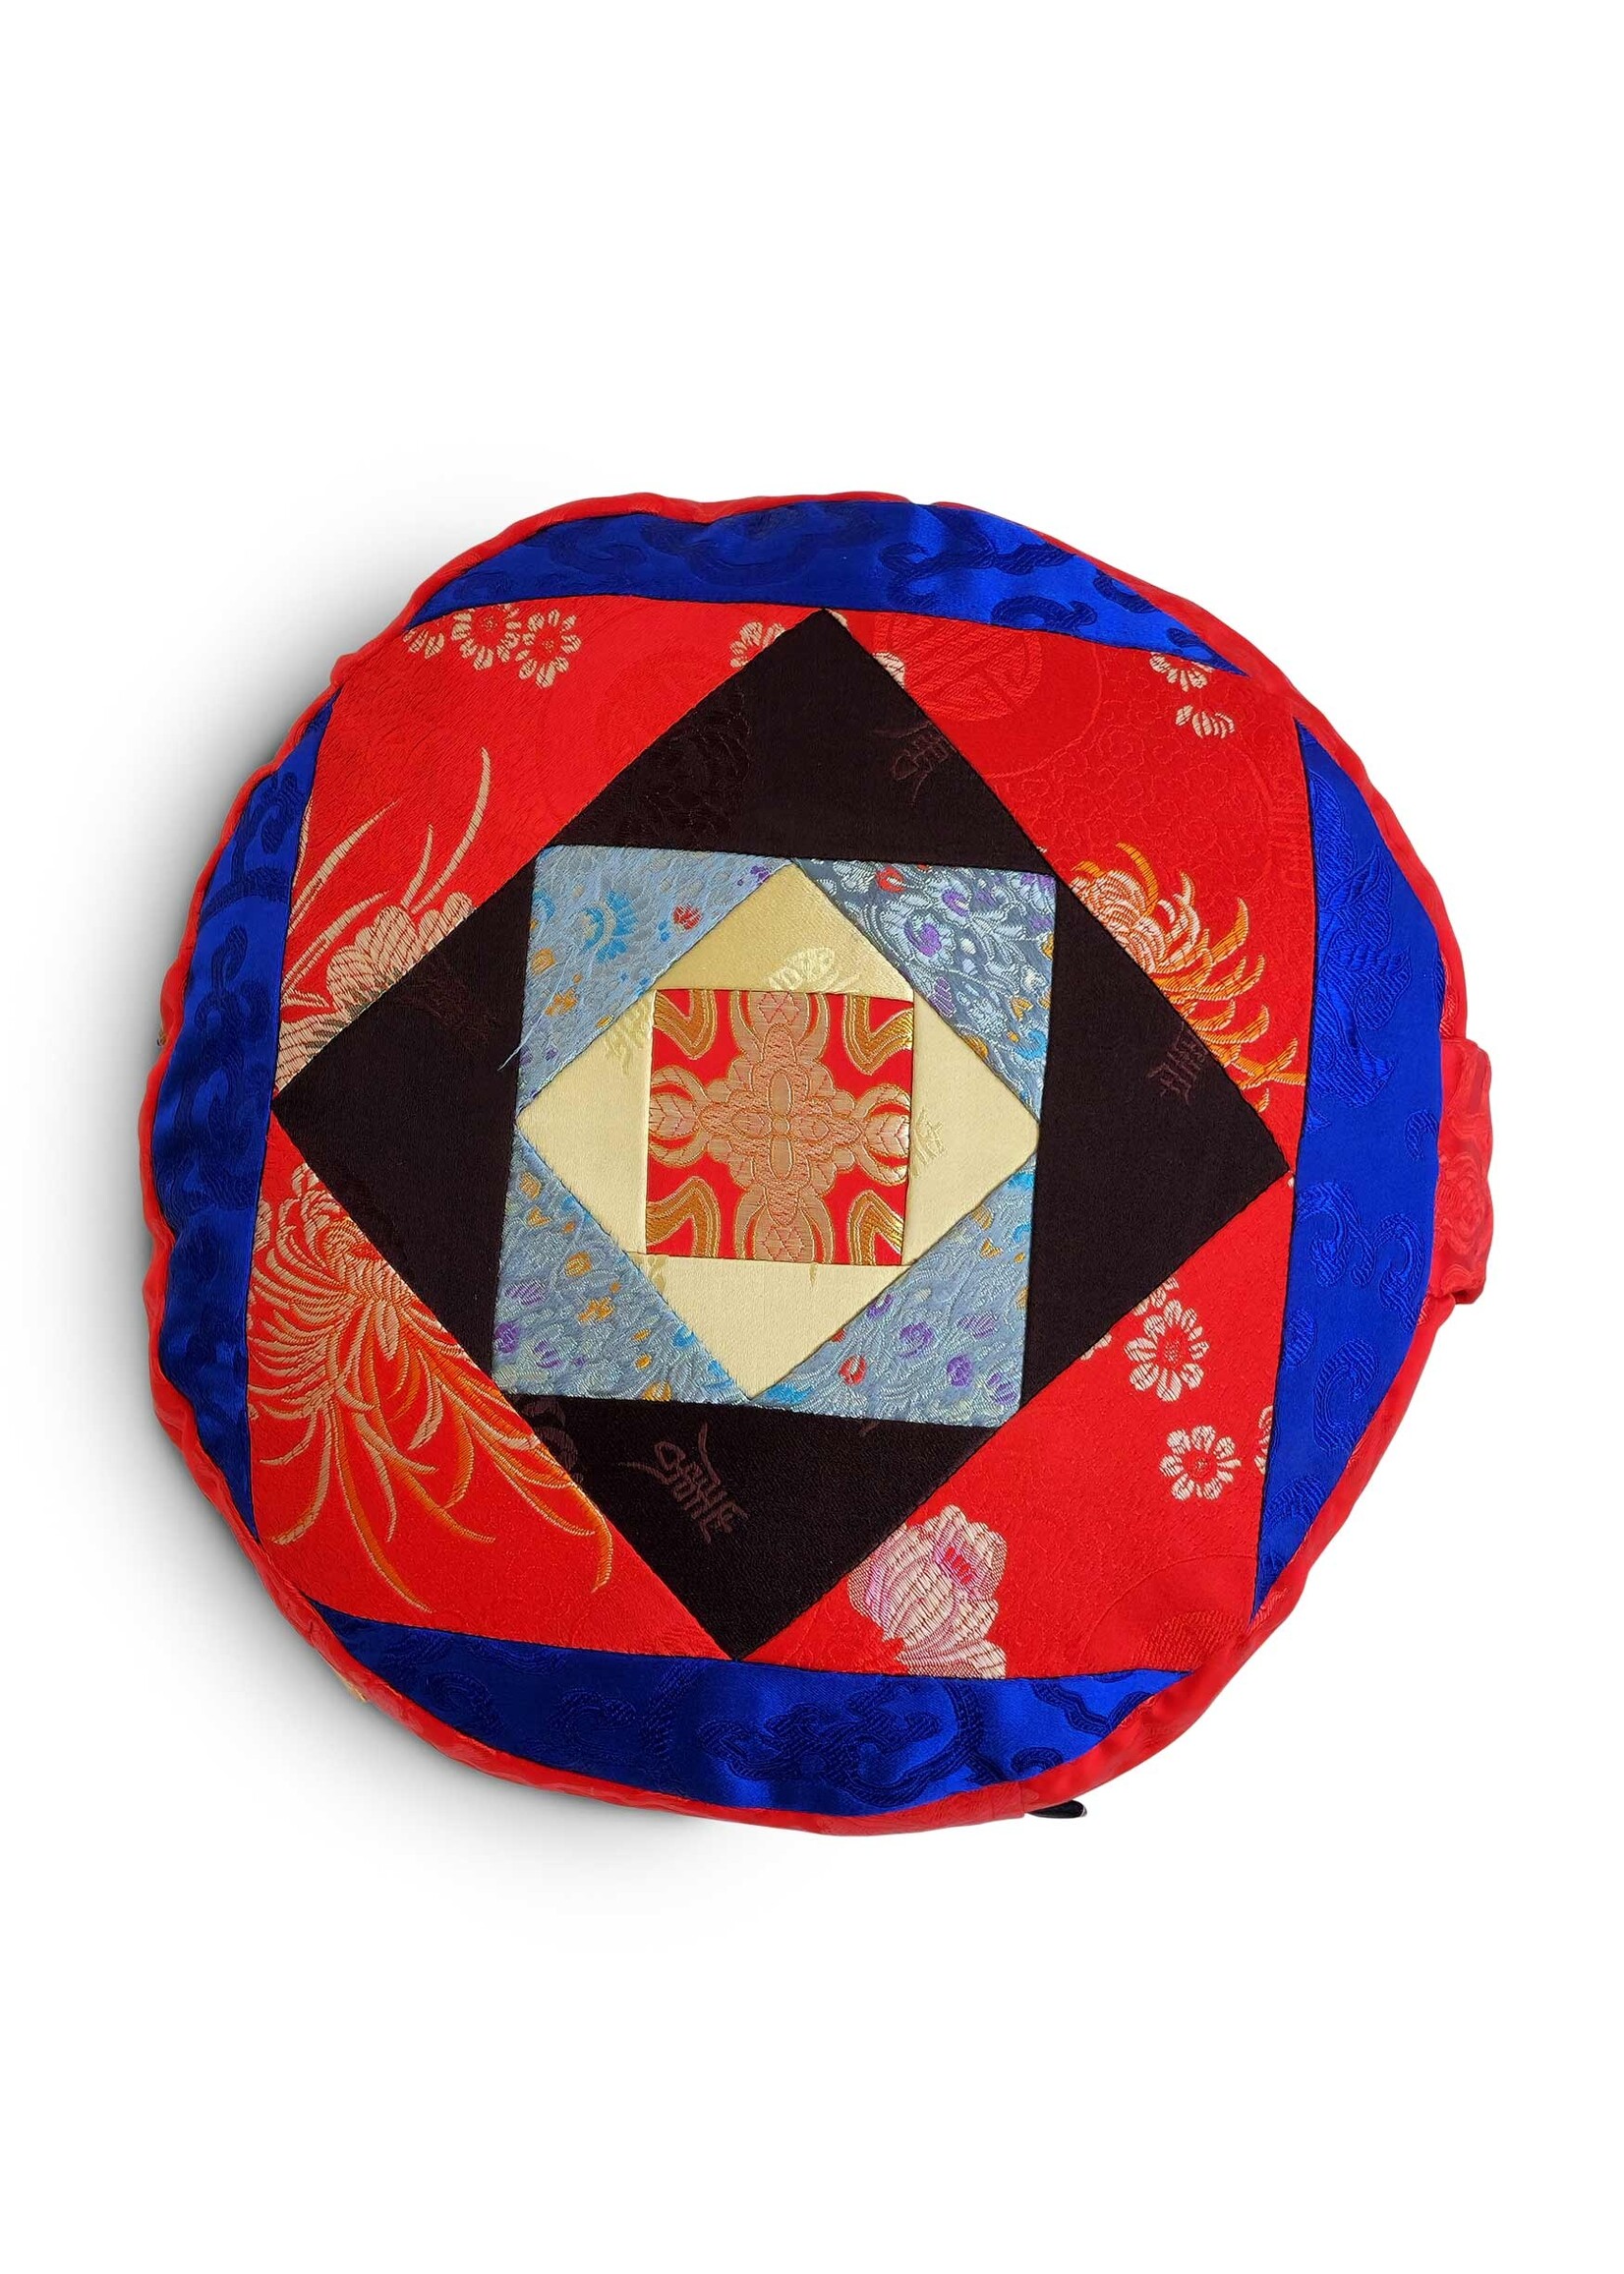 Cuscino da meditazione tibetano Zafu, realizzato in broccato di seta con imbottitura in Kapok, rosso